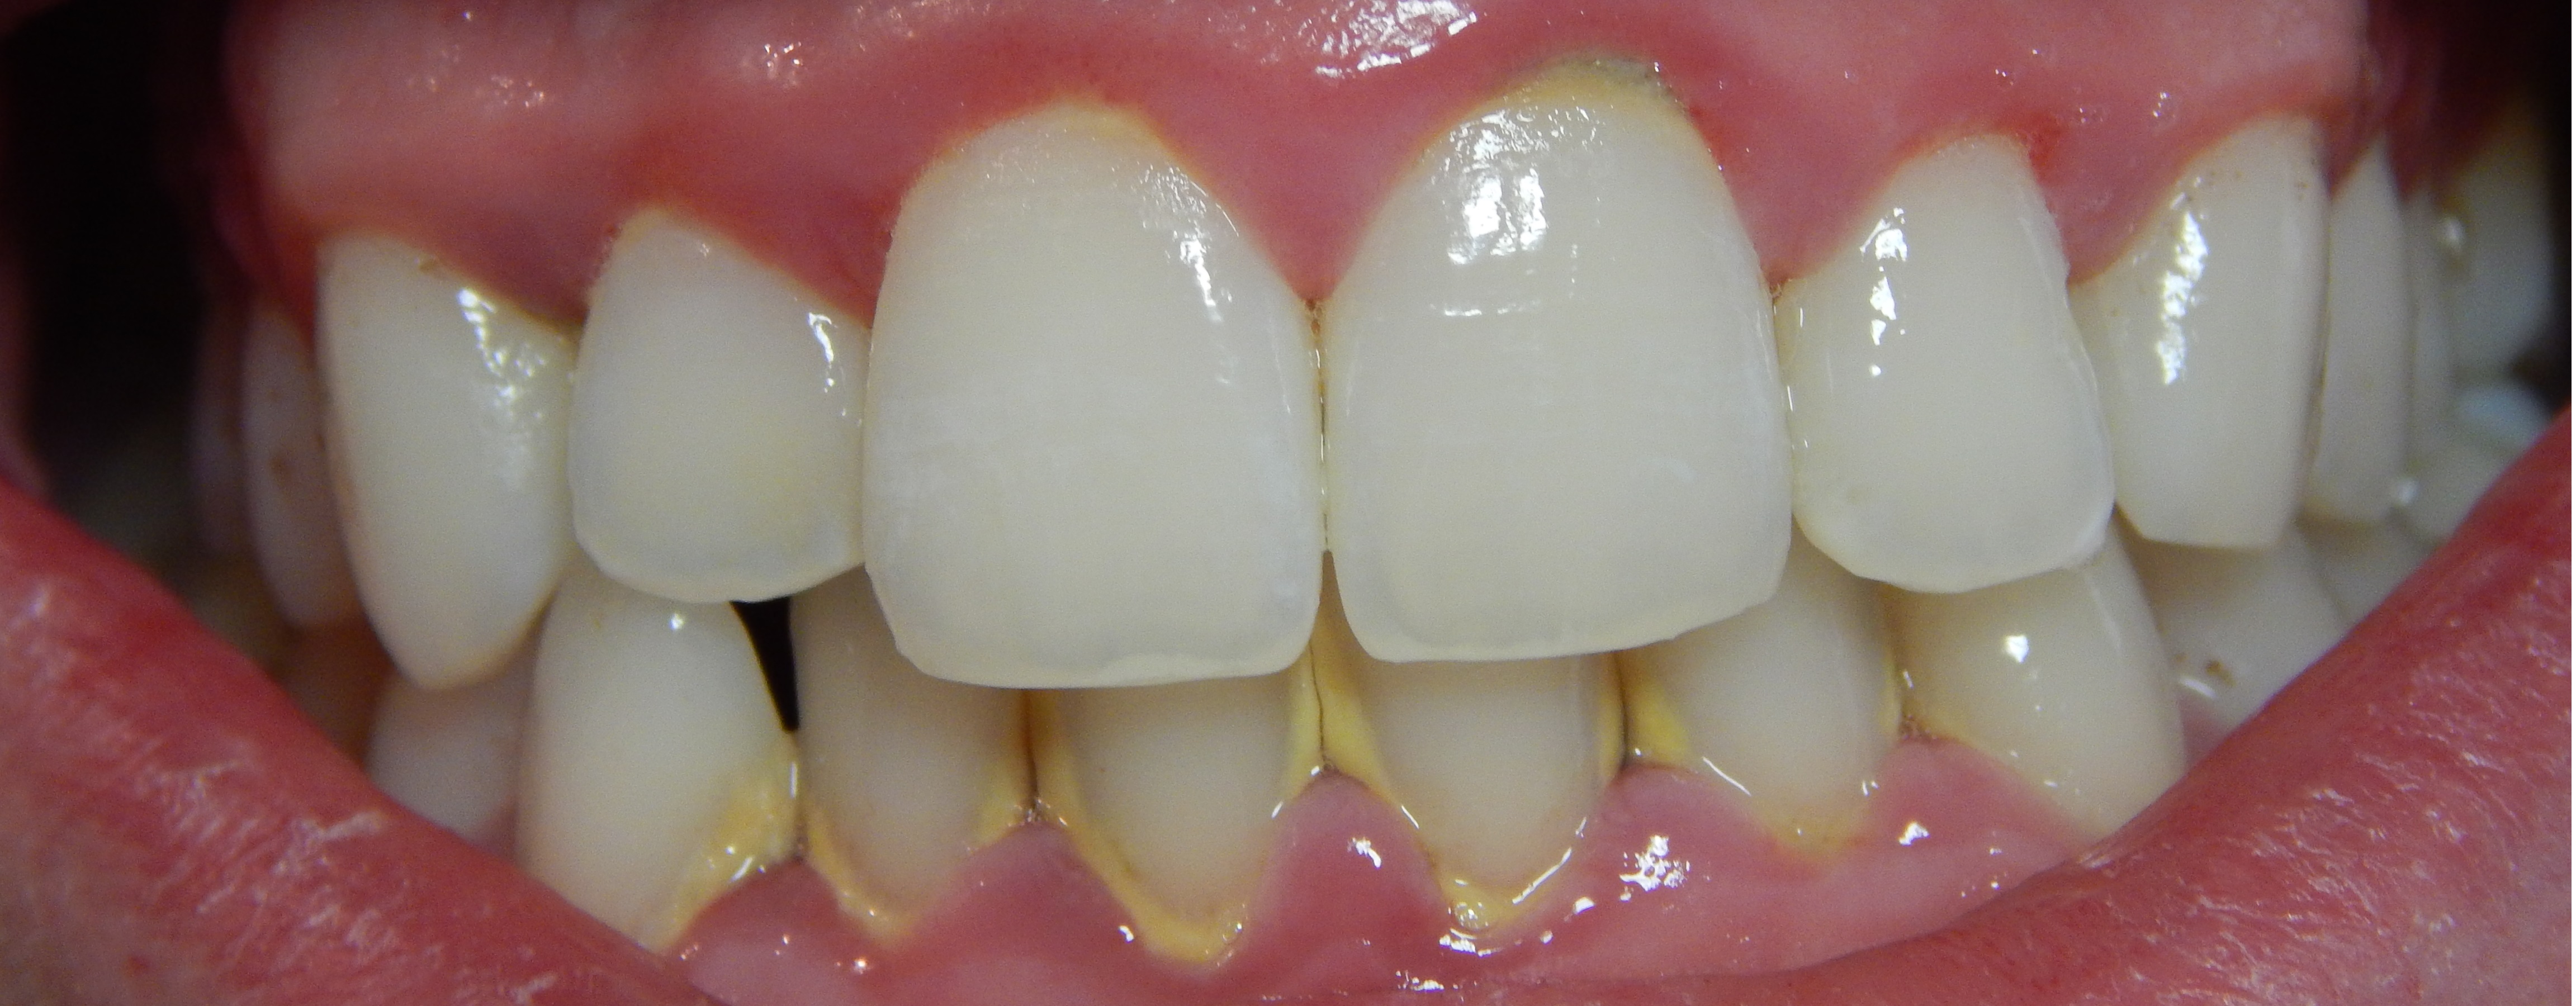 華人好發的口腔疾病──牙周病 | 牙醫 | 洗牙 | 清潔牙齒 | 大紀元